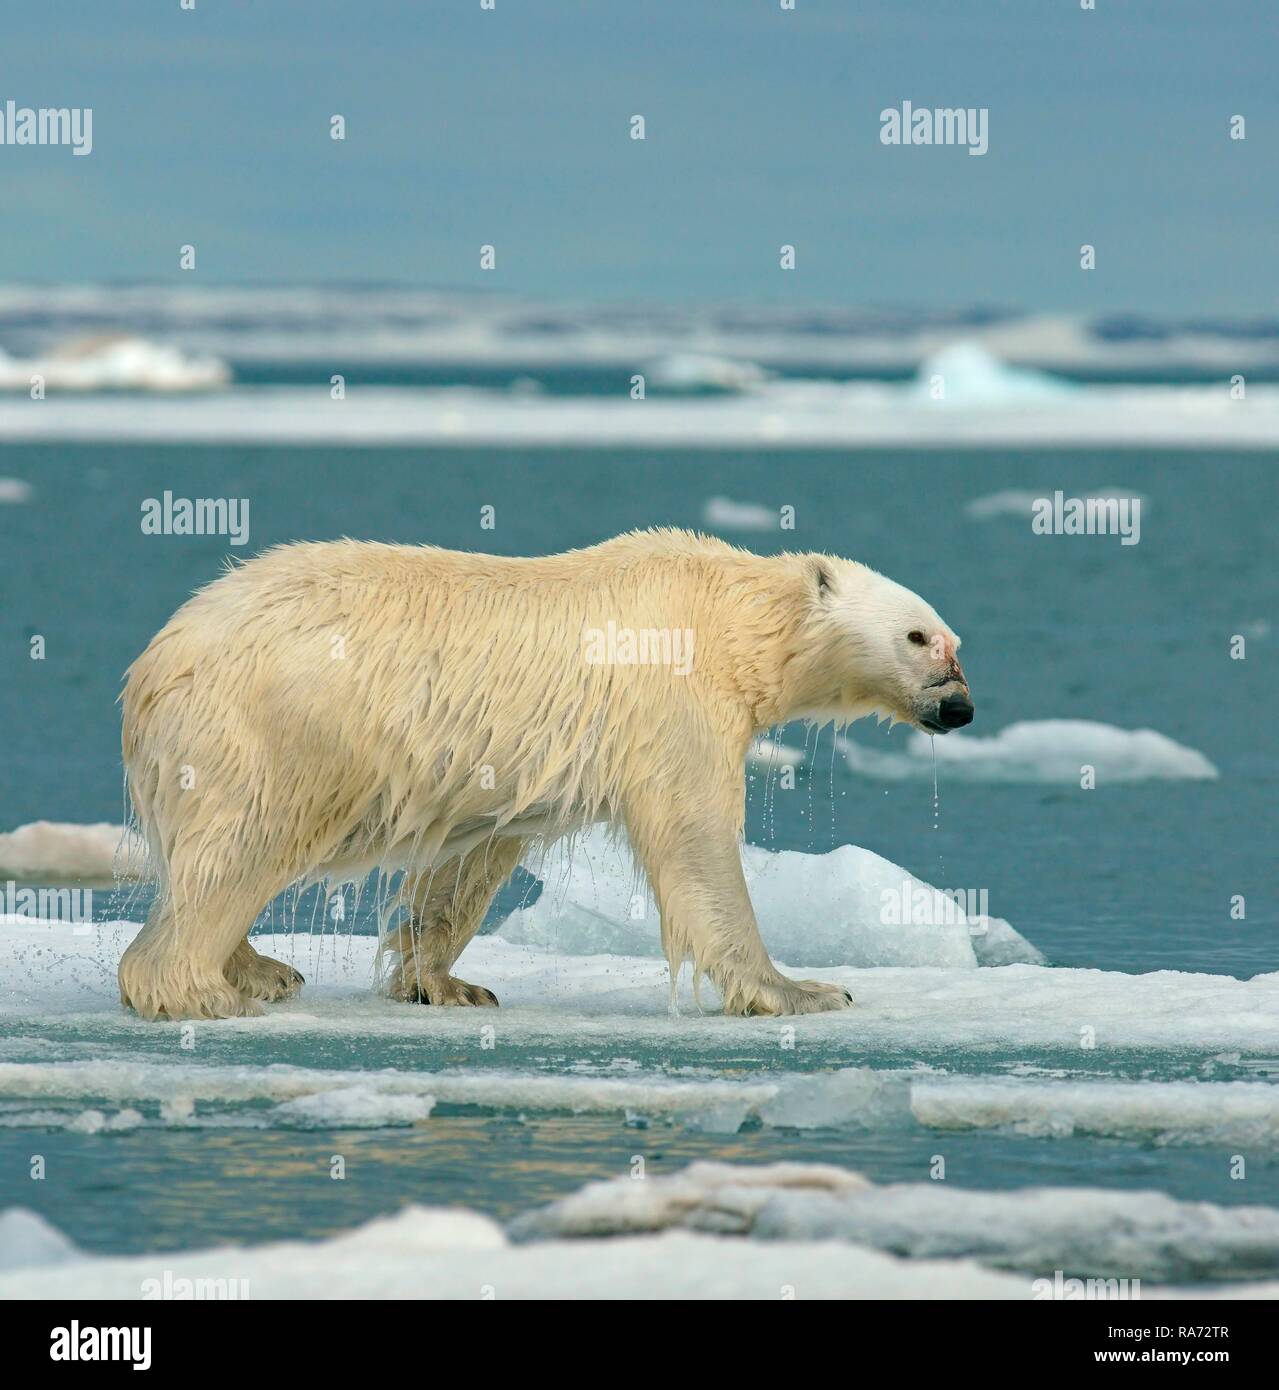 Eisbär (Ursus maritimus) läuft auf Eisscholle, Wasser tropft aus dem nassen Fell, in der norwegischen Arktis Svalbard, Norwegen Stockfoto